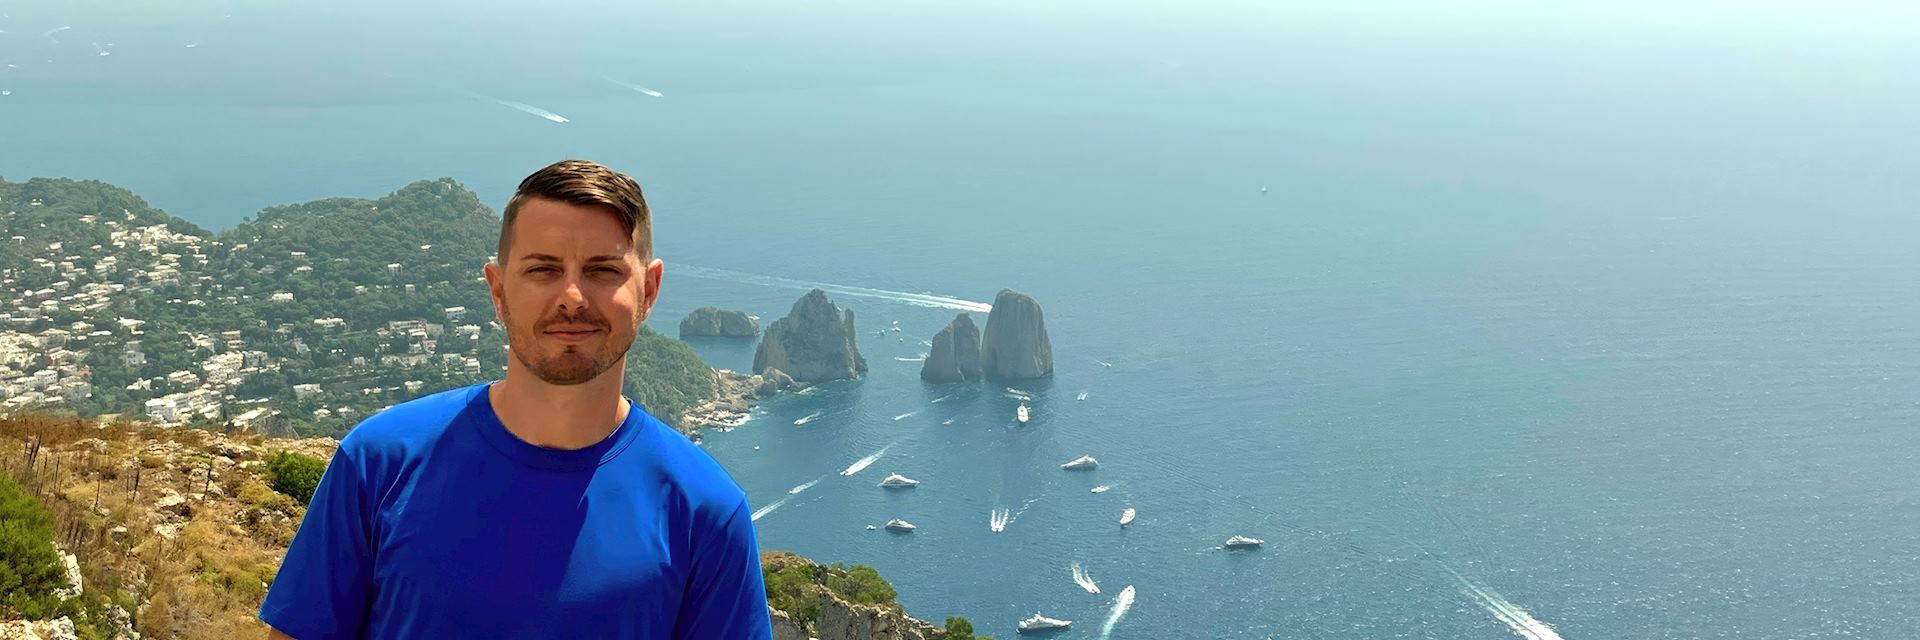 Jacob in Capri